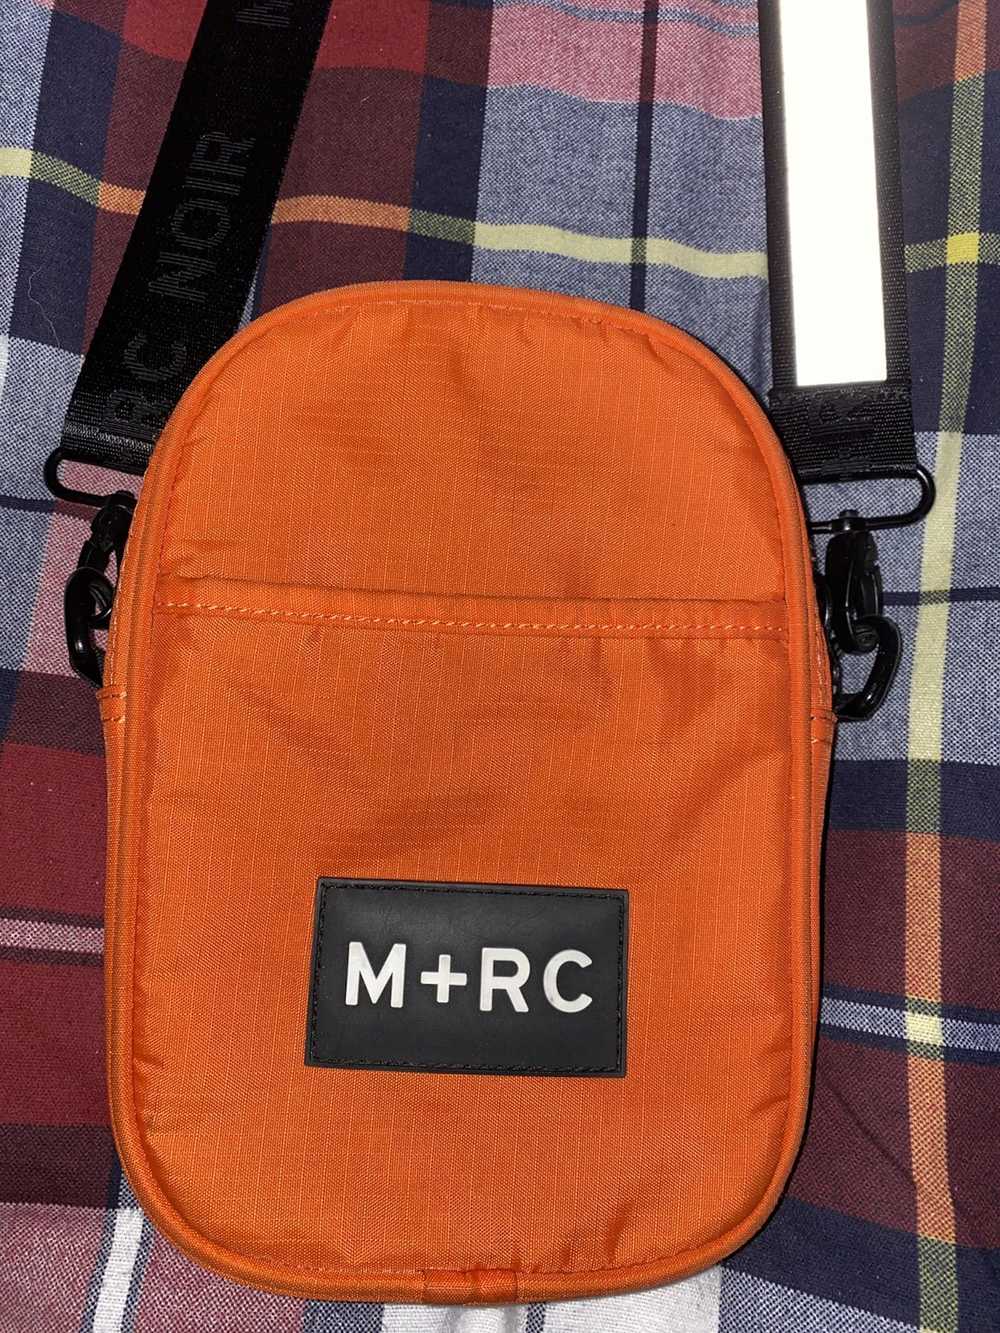 M+Rc Noir M+RC Noir Shoulder Bag Reflective - image 2